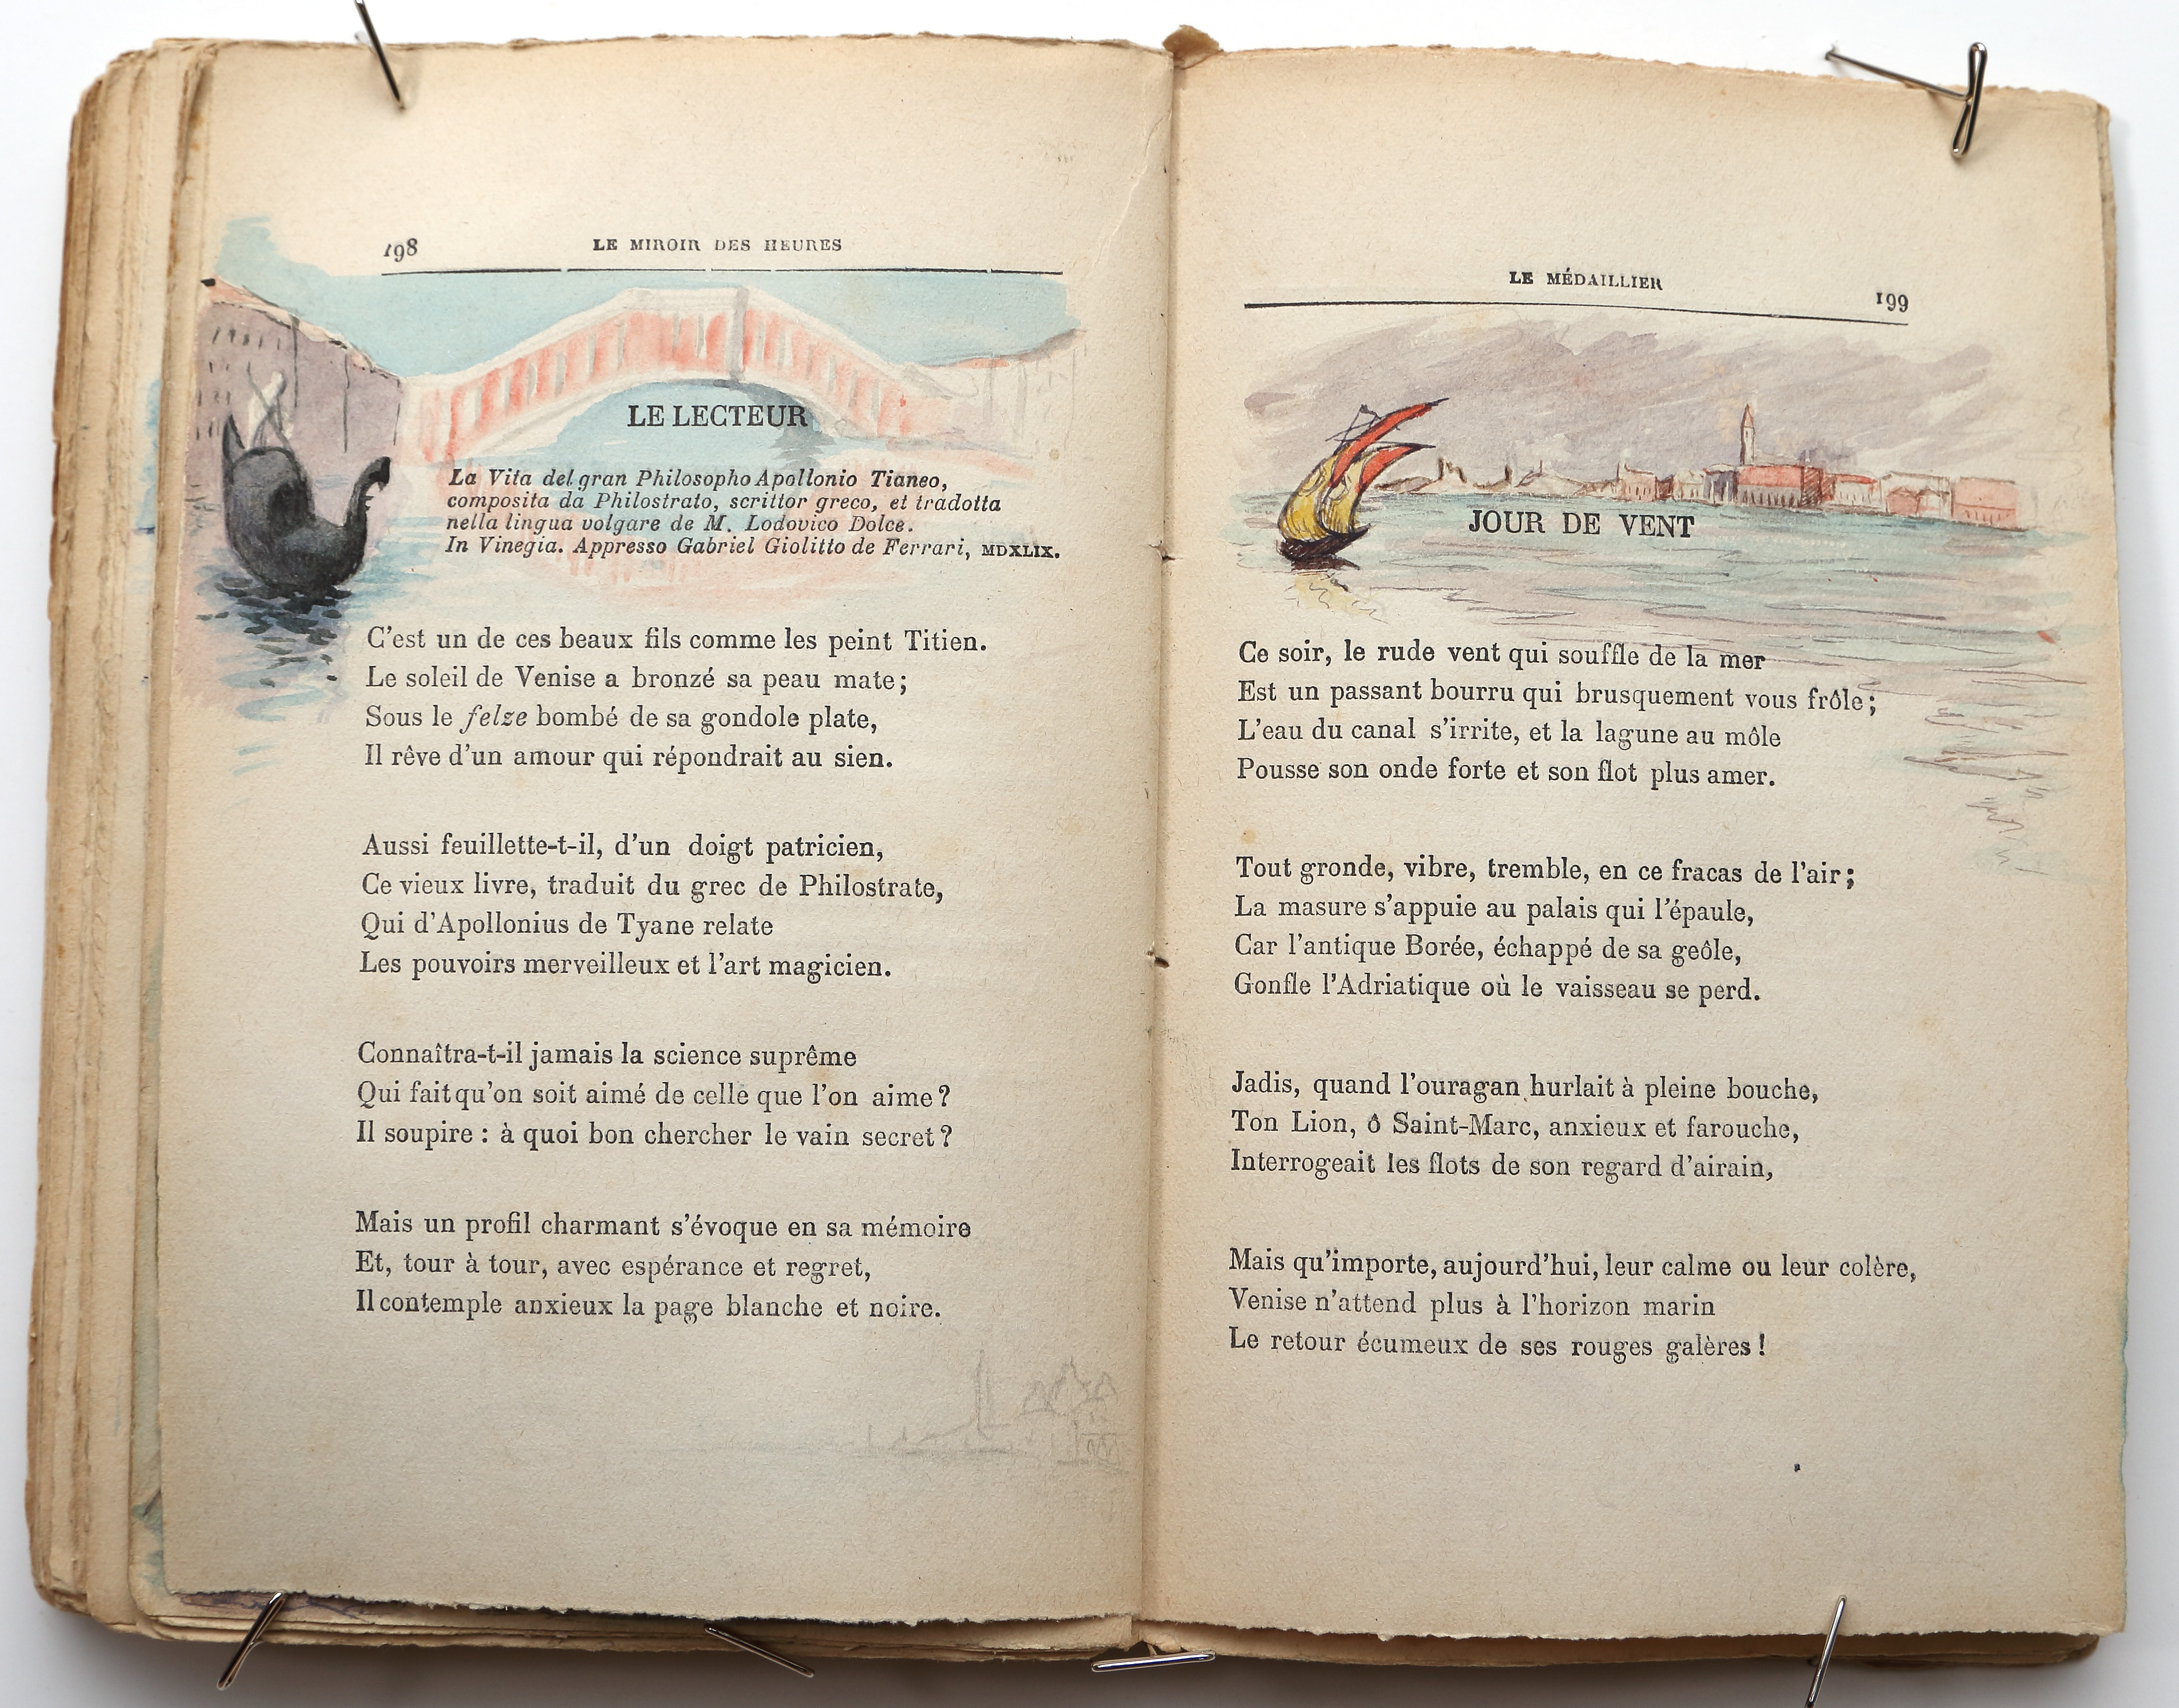 Pages 198–199.  Le Miroir des Heures, illustrations.  Jean Charlot.